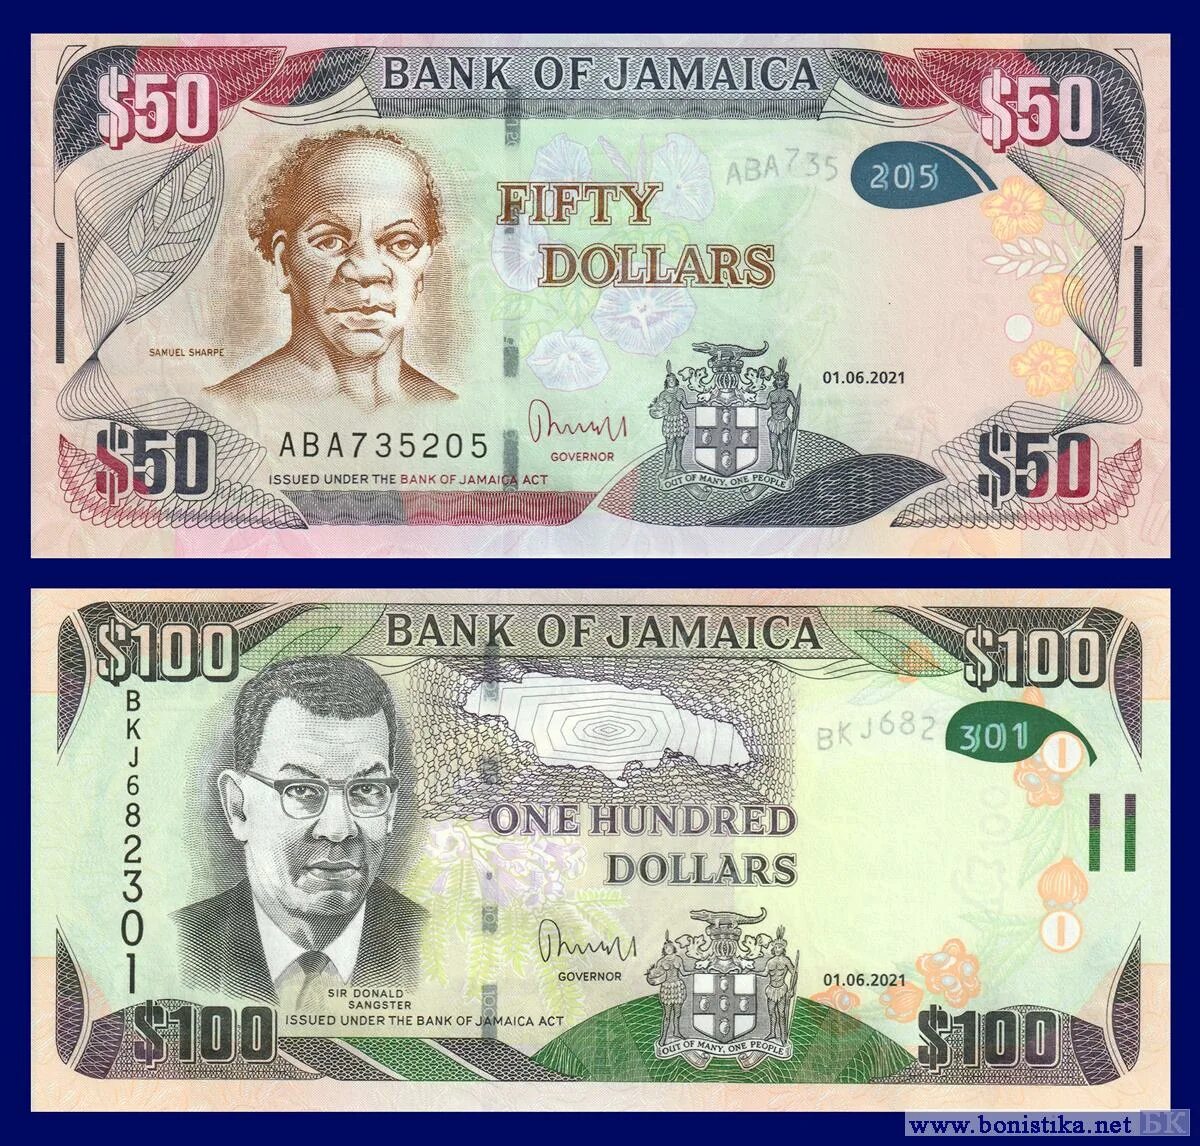 Доллары купюры нового образца. 100 Долларов нового образца. Валюта Ямайки. Новый дизайн стодолларовой купюры.